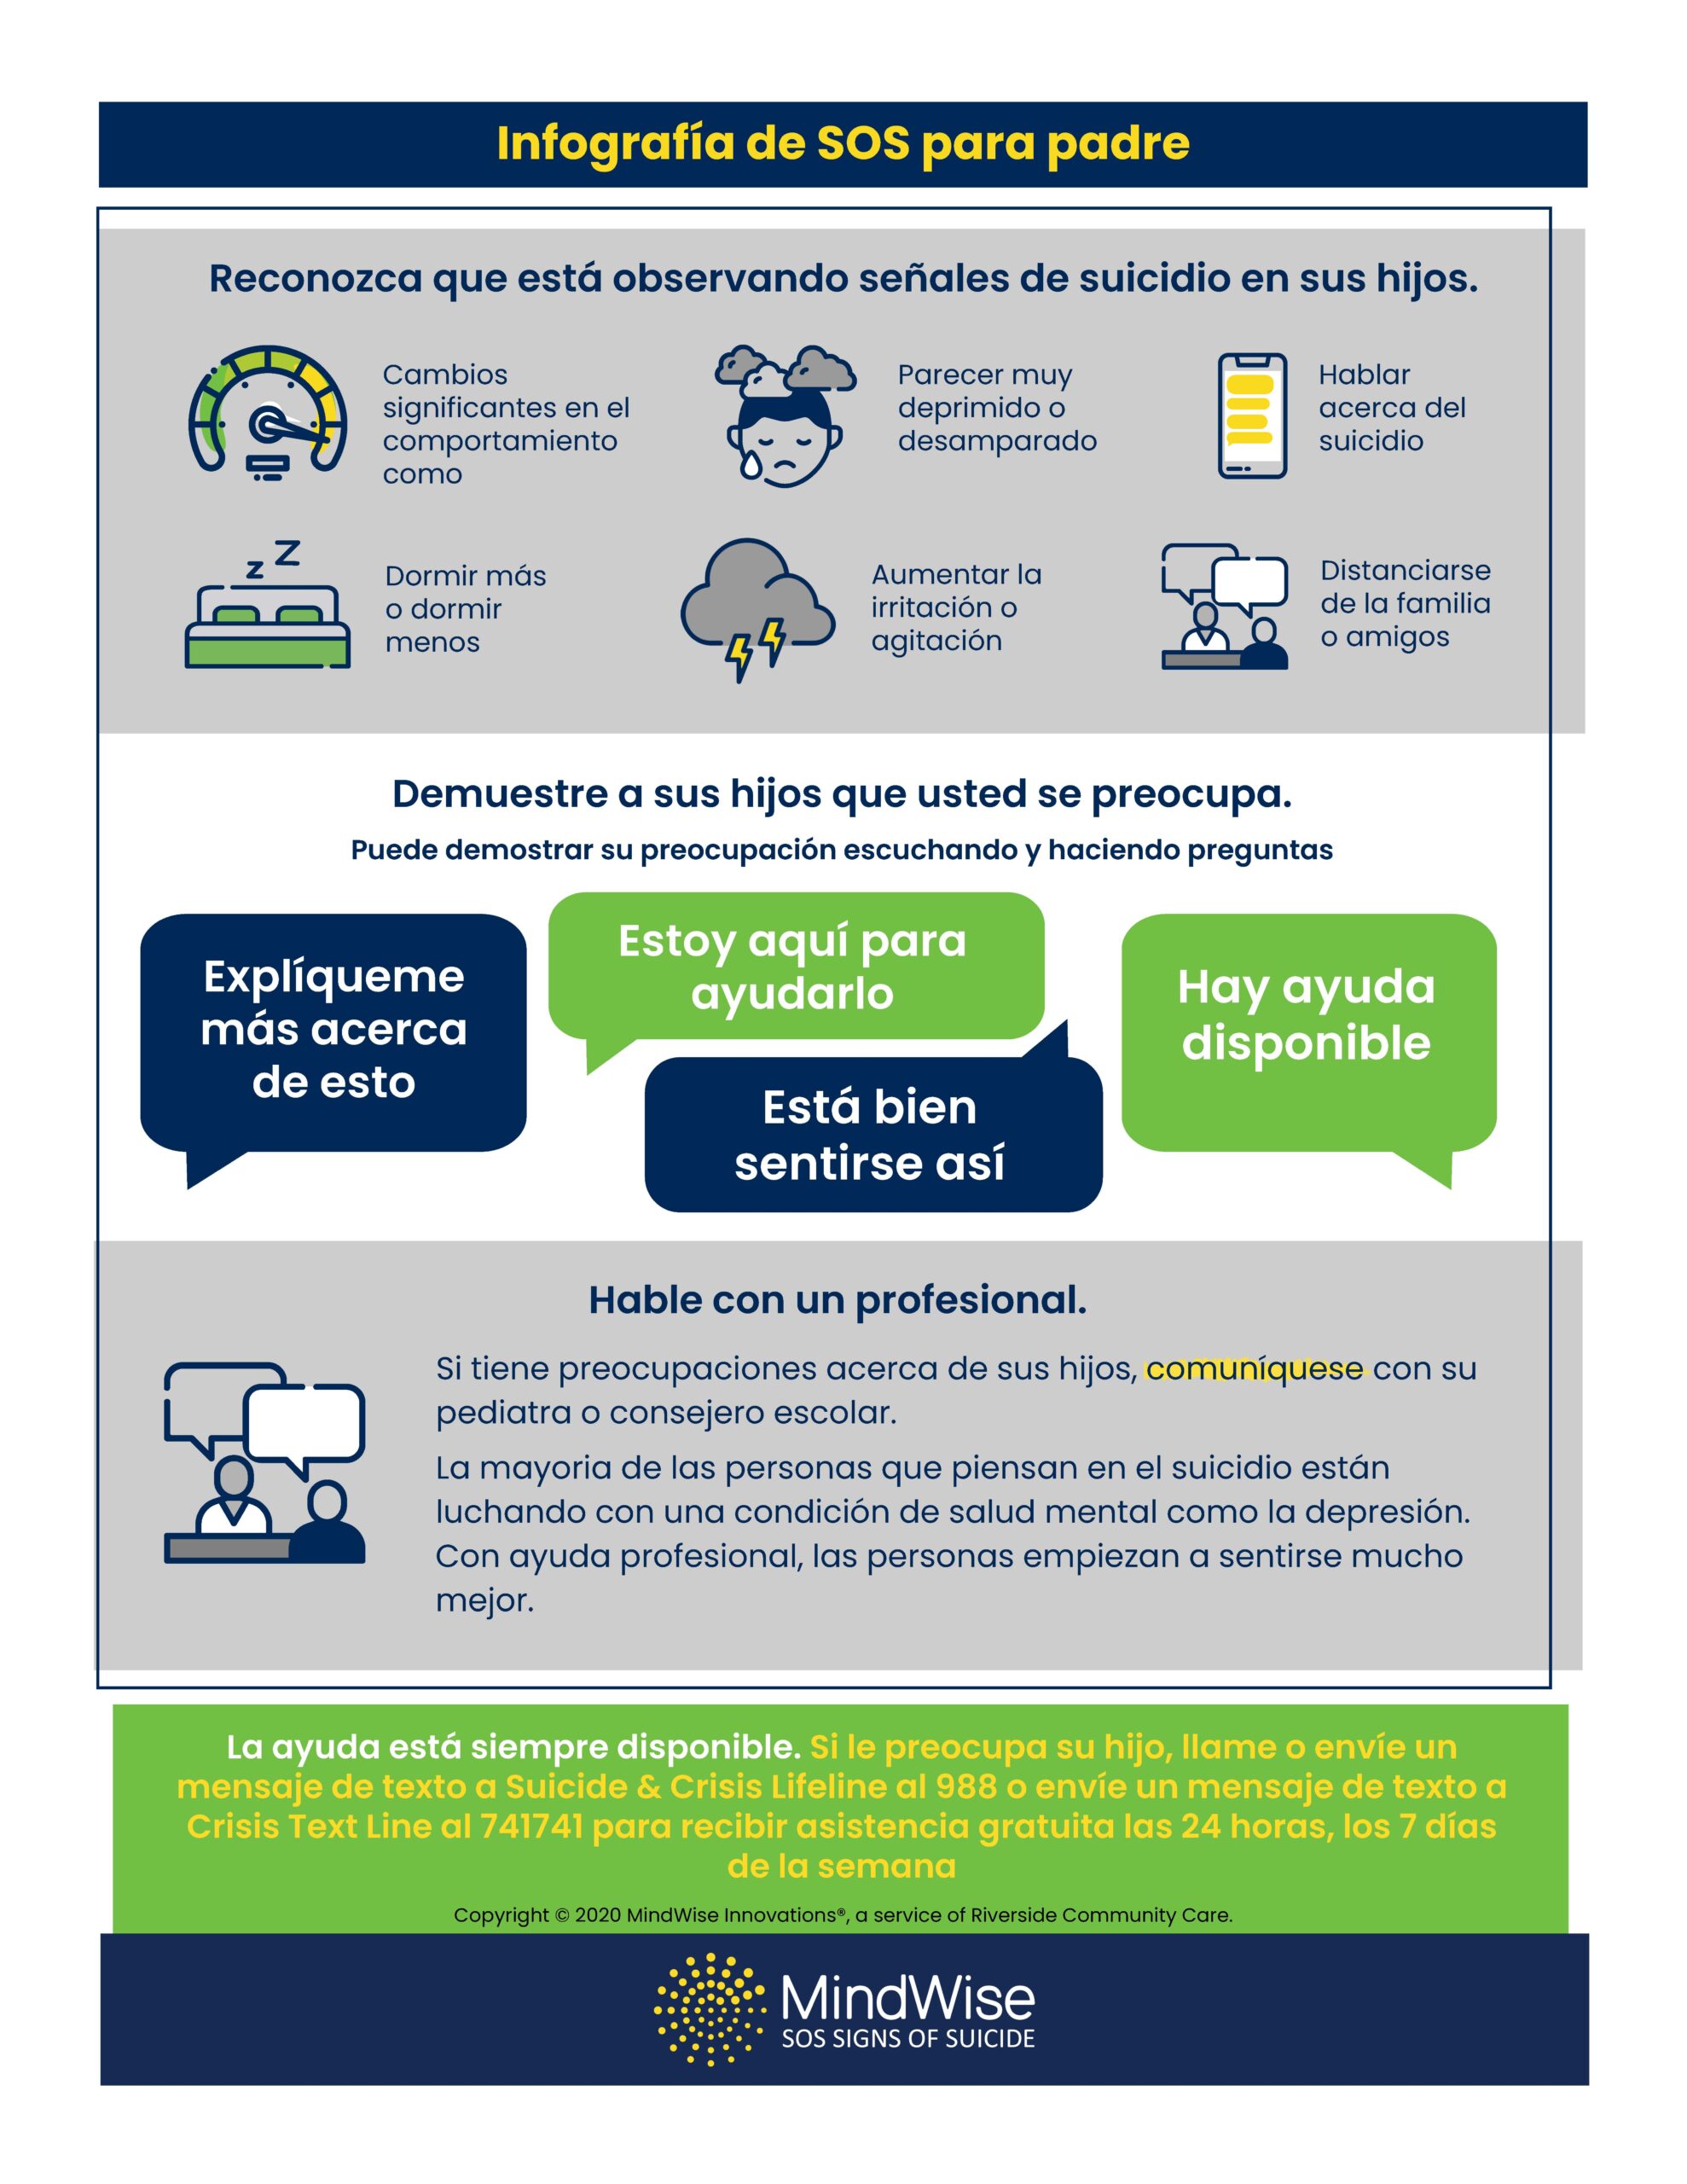 Infographic SOS (tiếng Tây Ban Nha) - Phụ huynh 2022